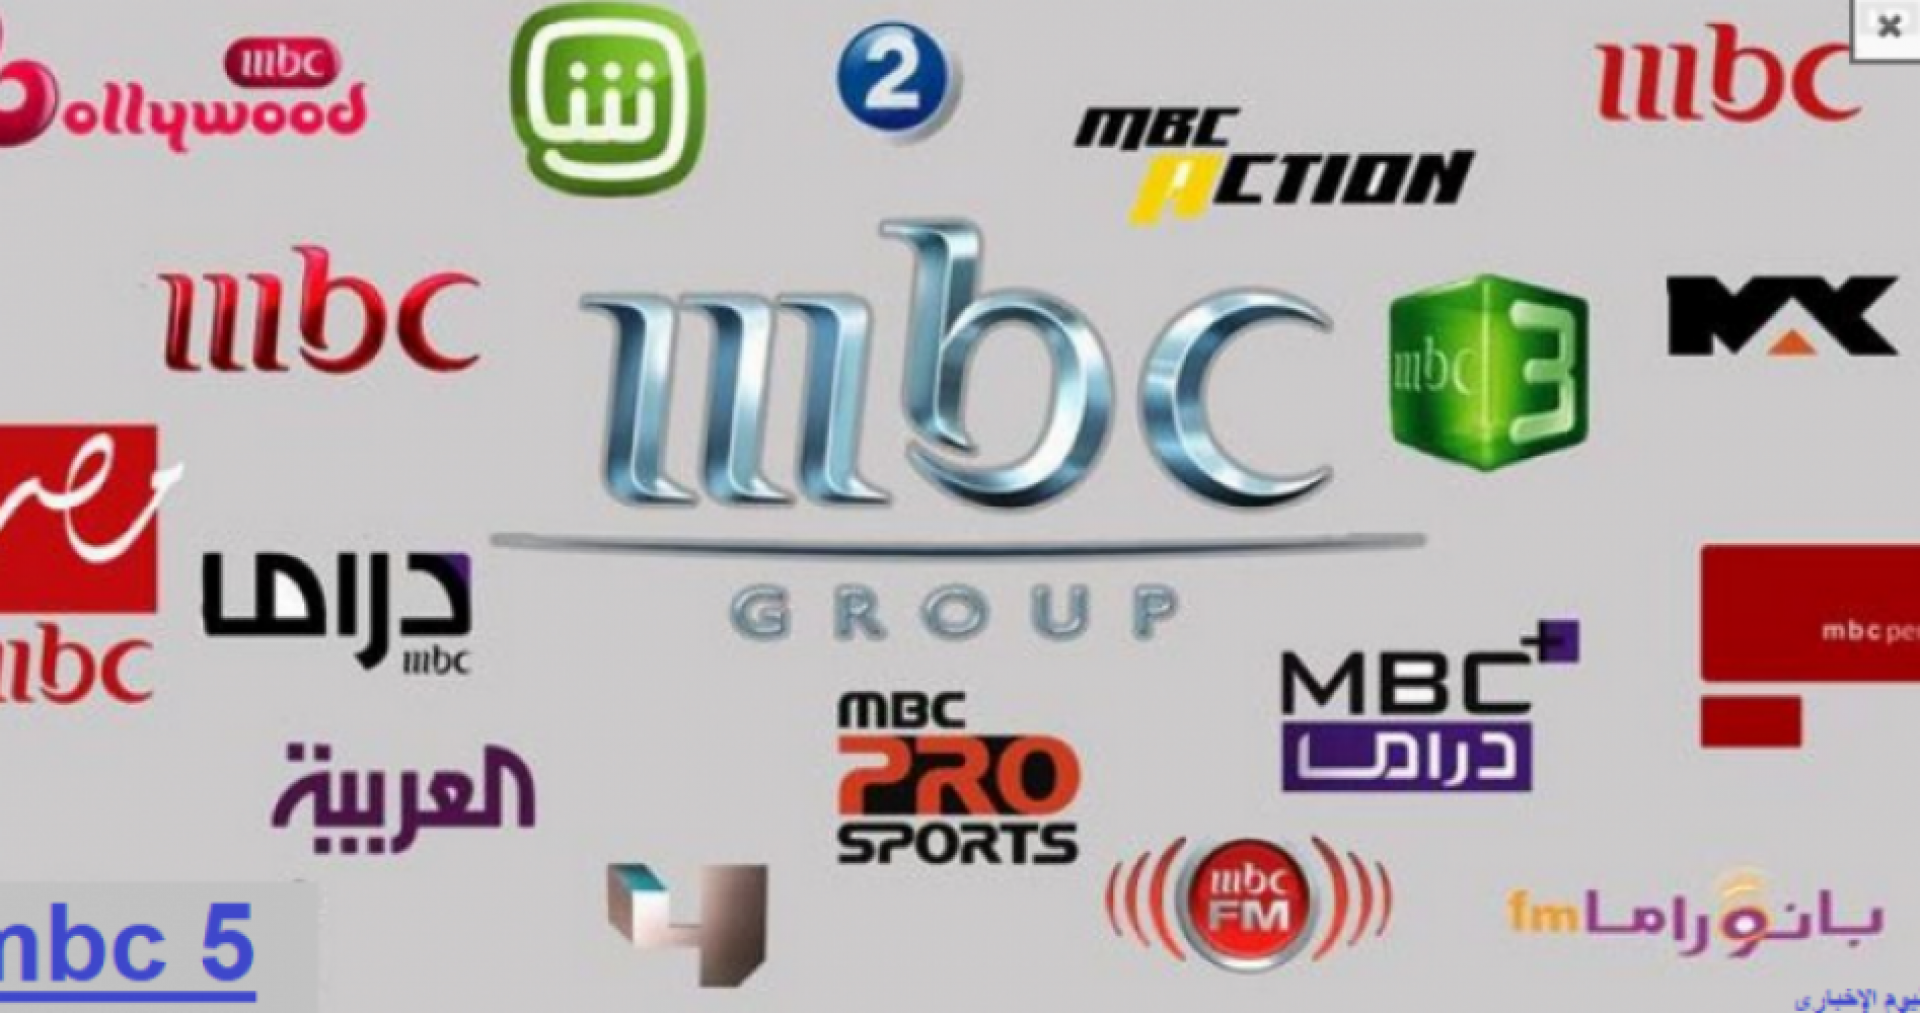  تردد قنوات MBC